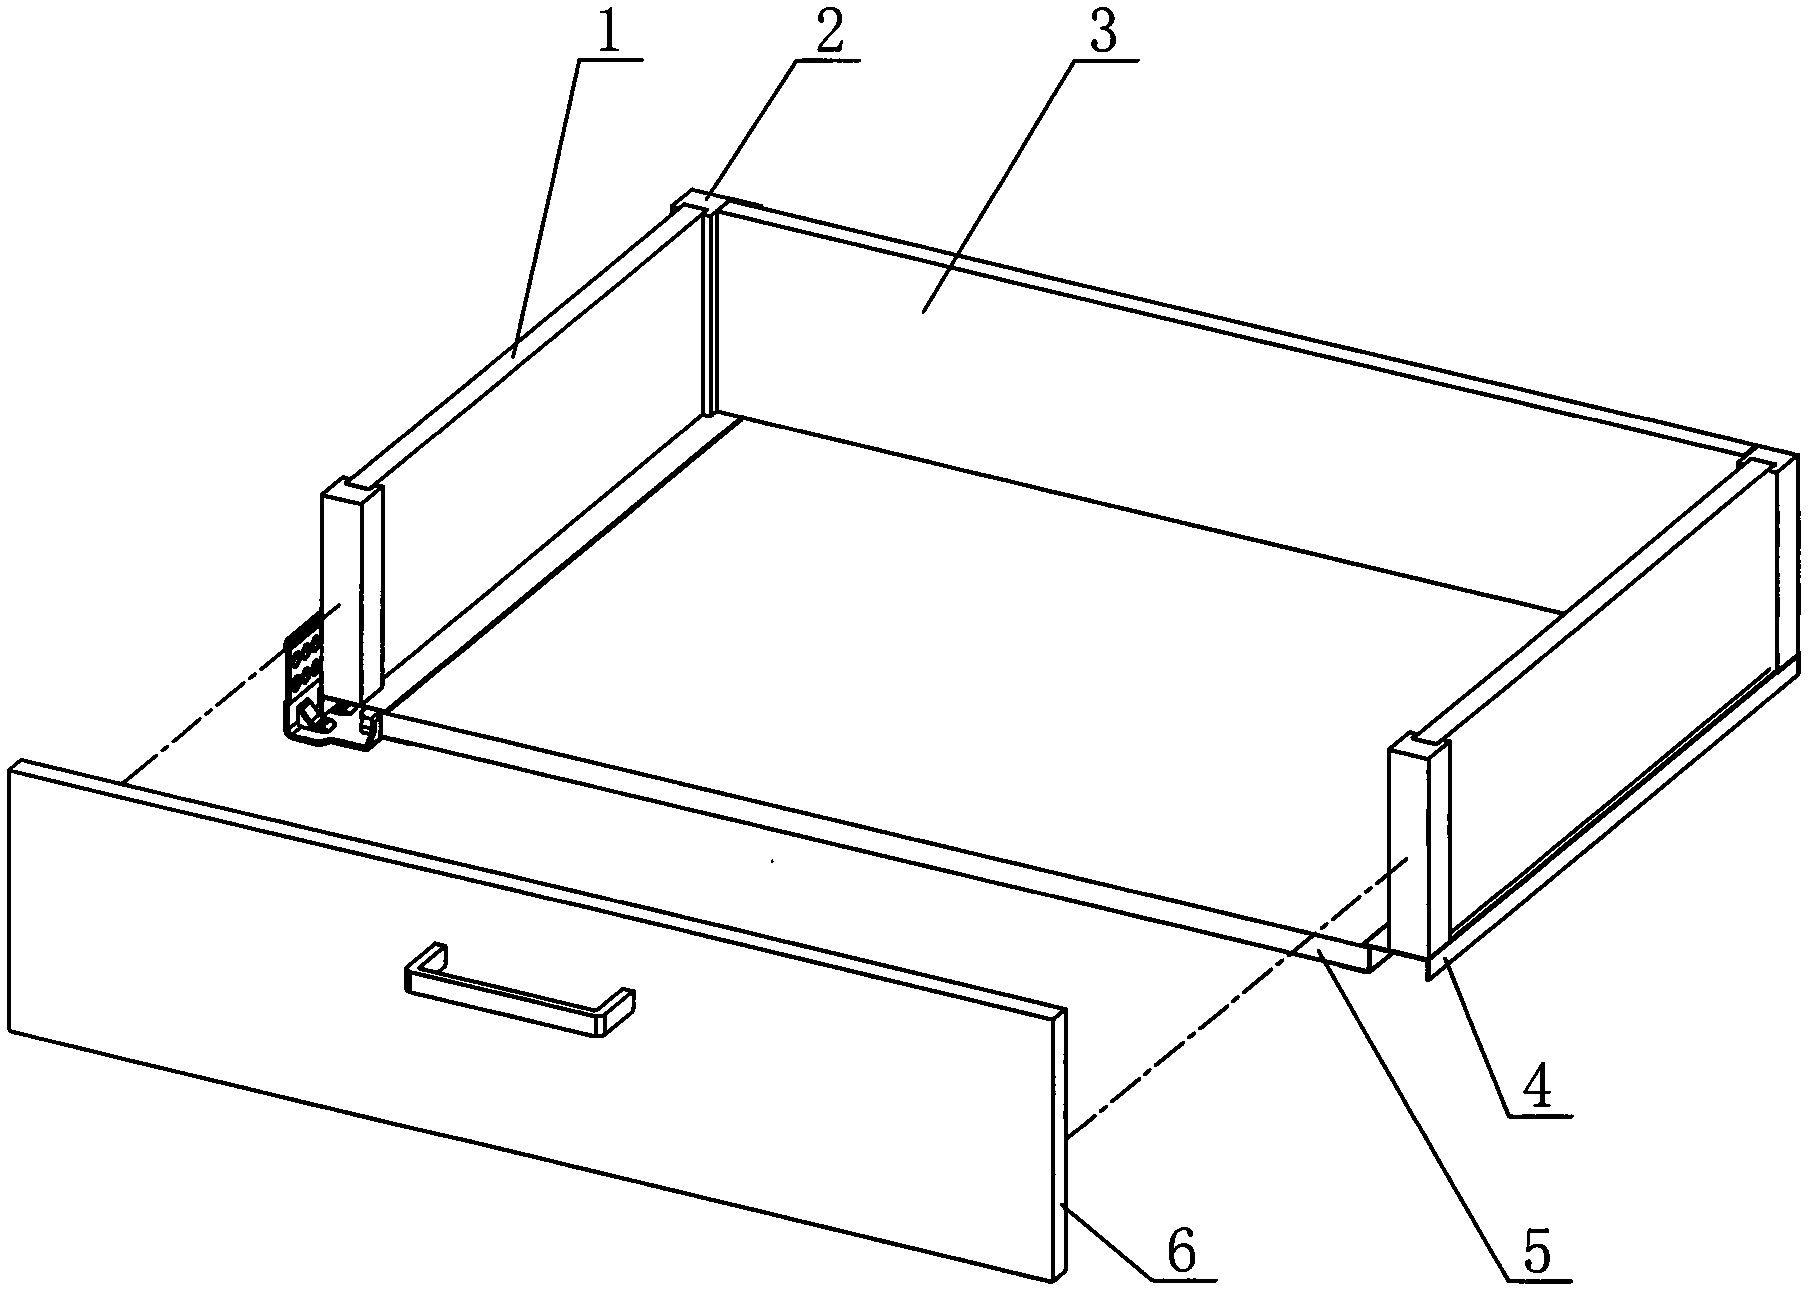 Drawer slide rail for furniture